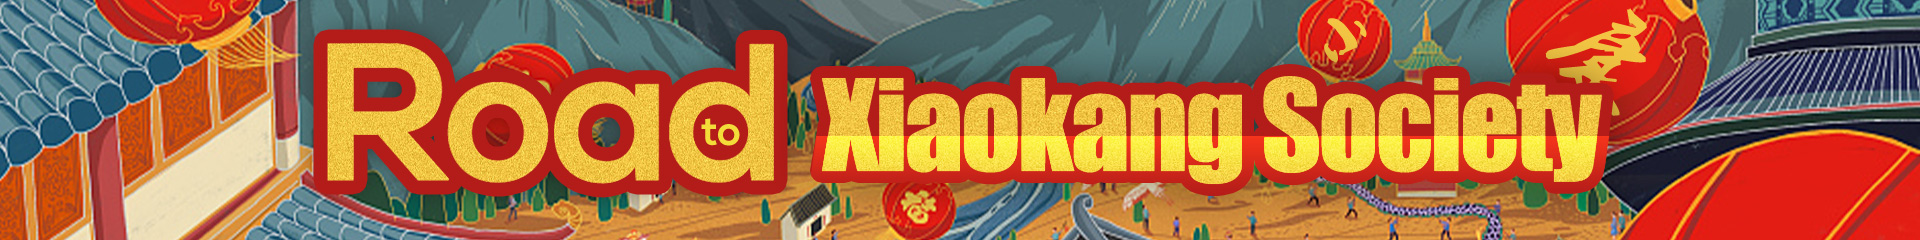 web banner for xiaokang society 0702